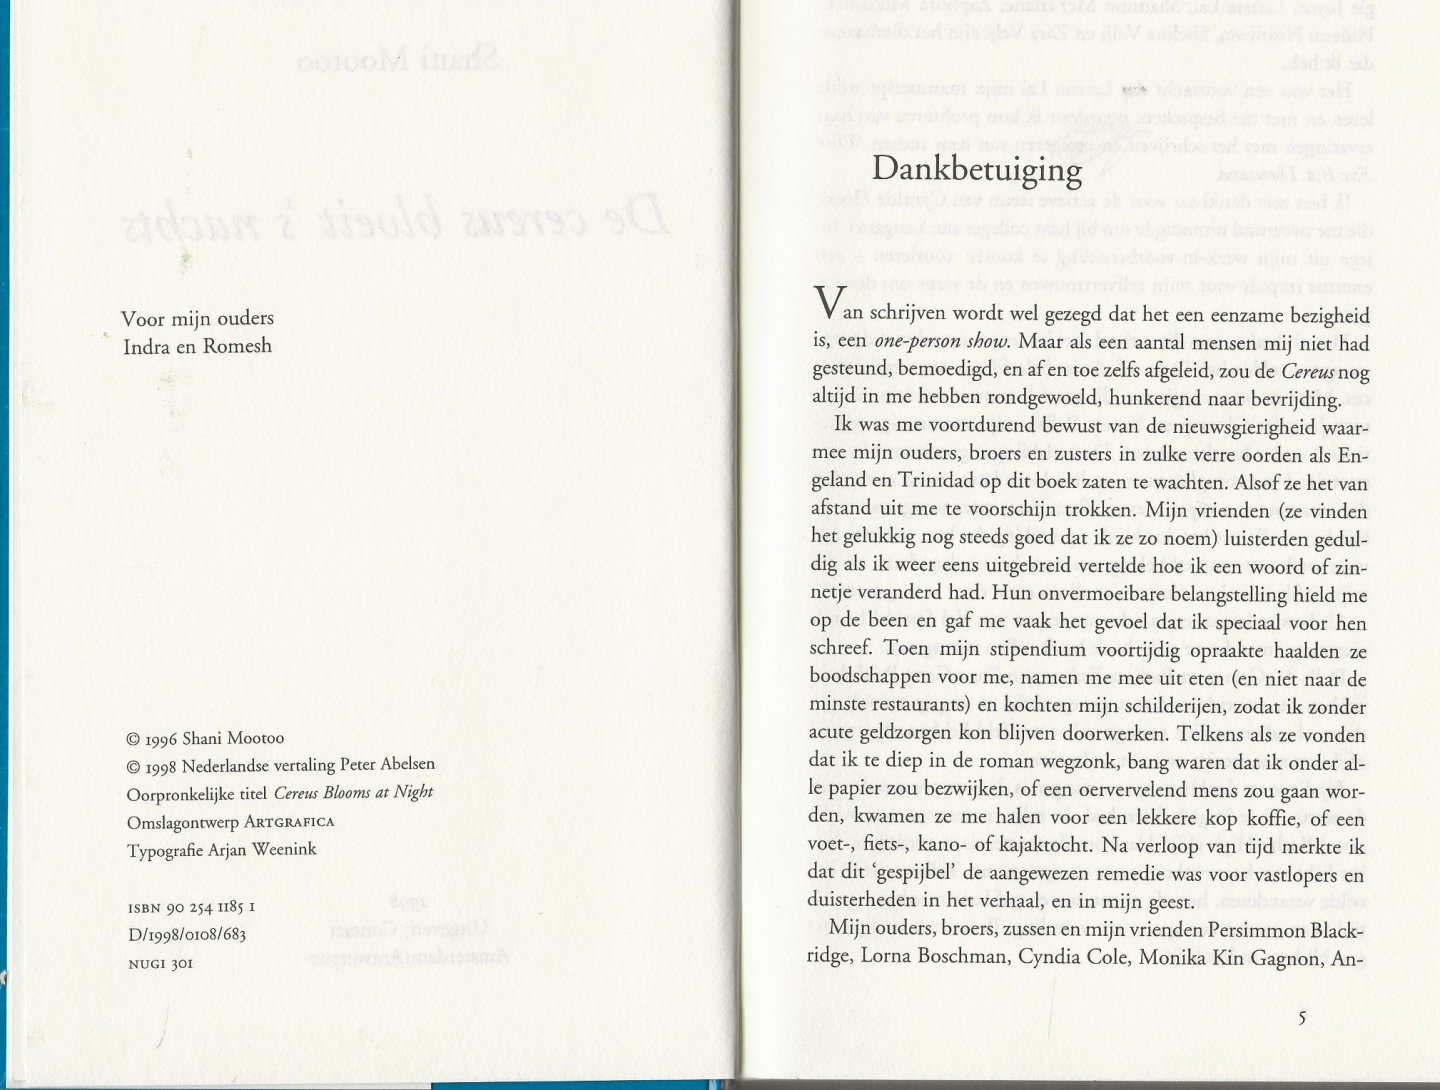 Mootoo, Shani . Nederlandse  vertaling Peter Abelsen  Typografie  Arjan Weenink - De Cereus Bloeit  s' Nachts